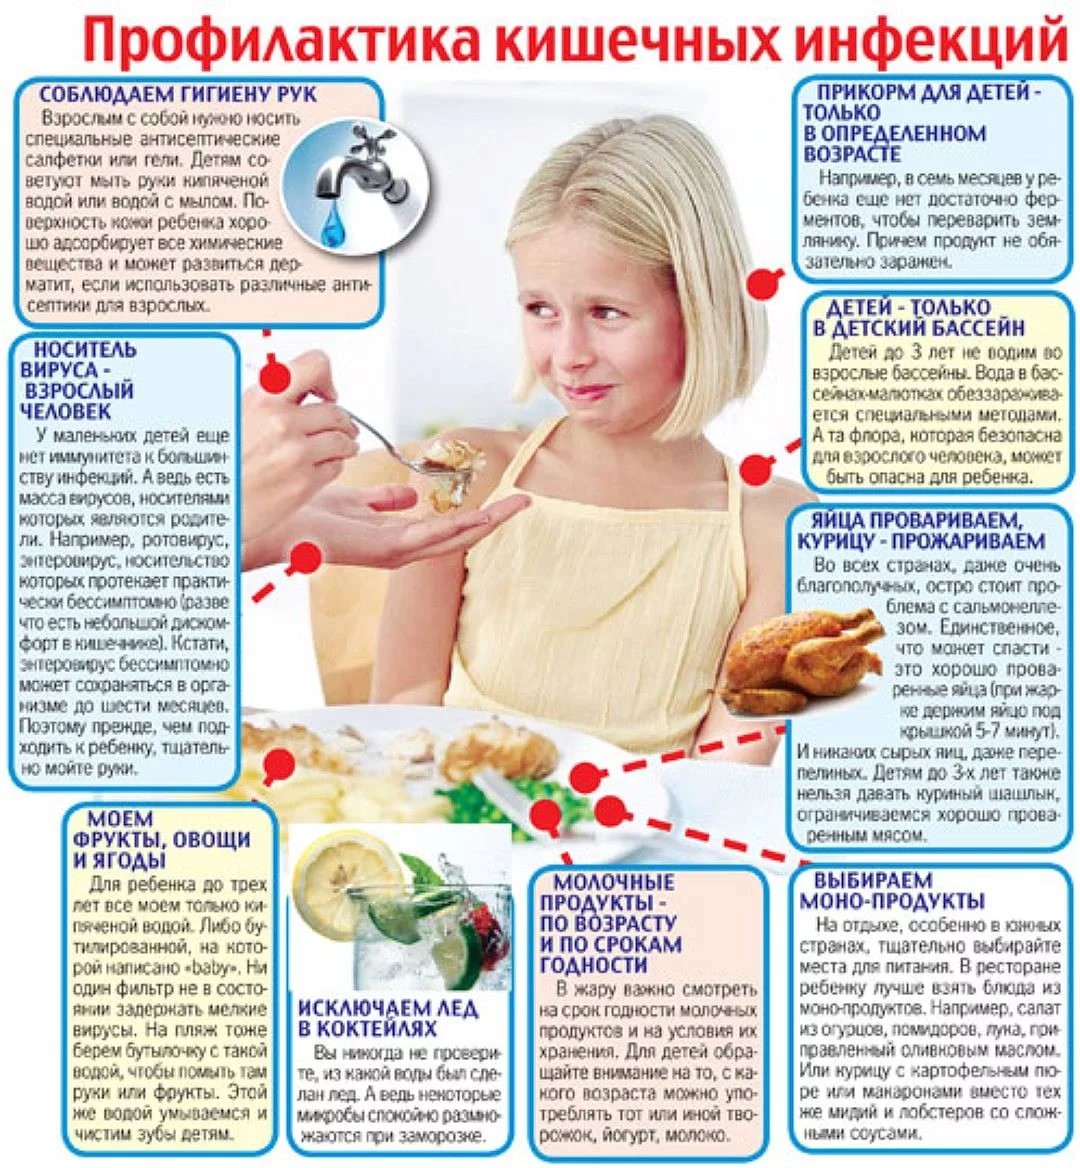 Чем кормить ребенка при поносе, запрещенные продукты и советы педиатра отравление.ру
чем кормить ребенка при поносе, запрещенные продукты и советы педиатра